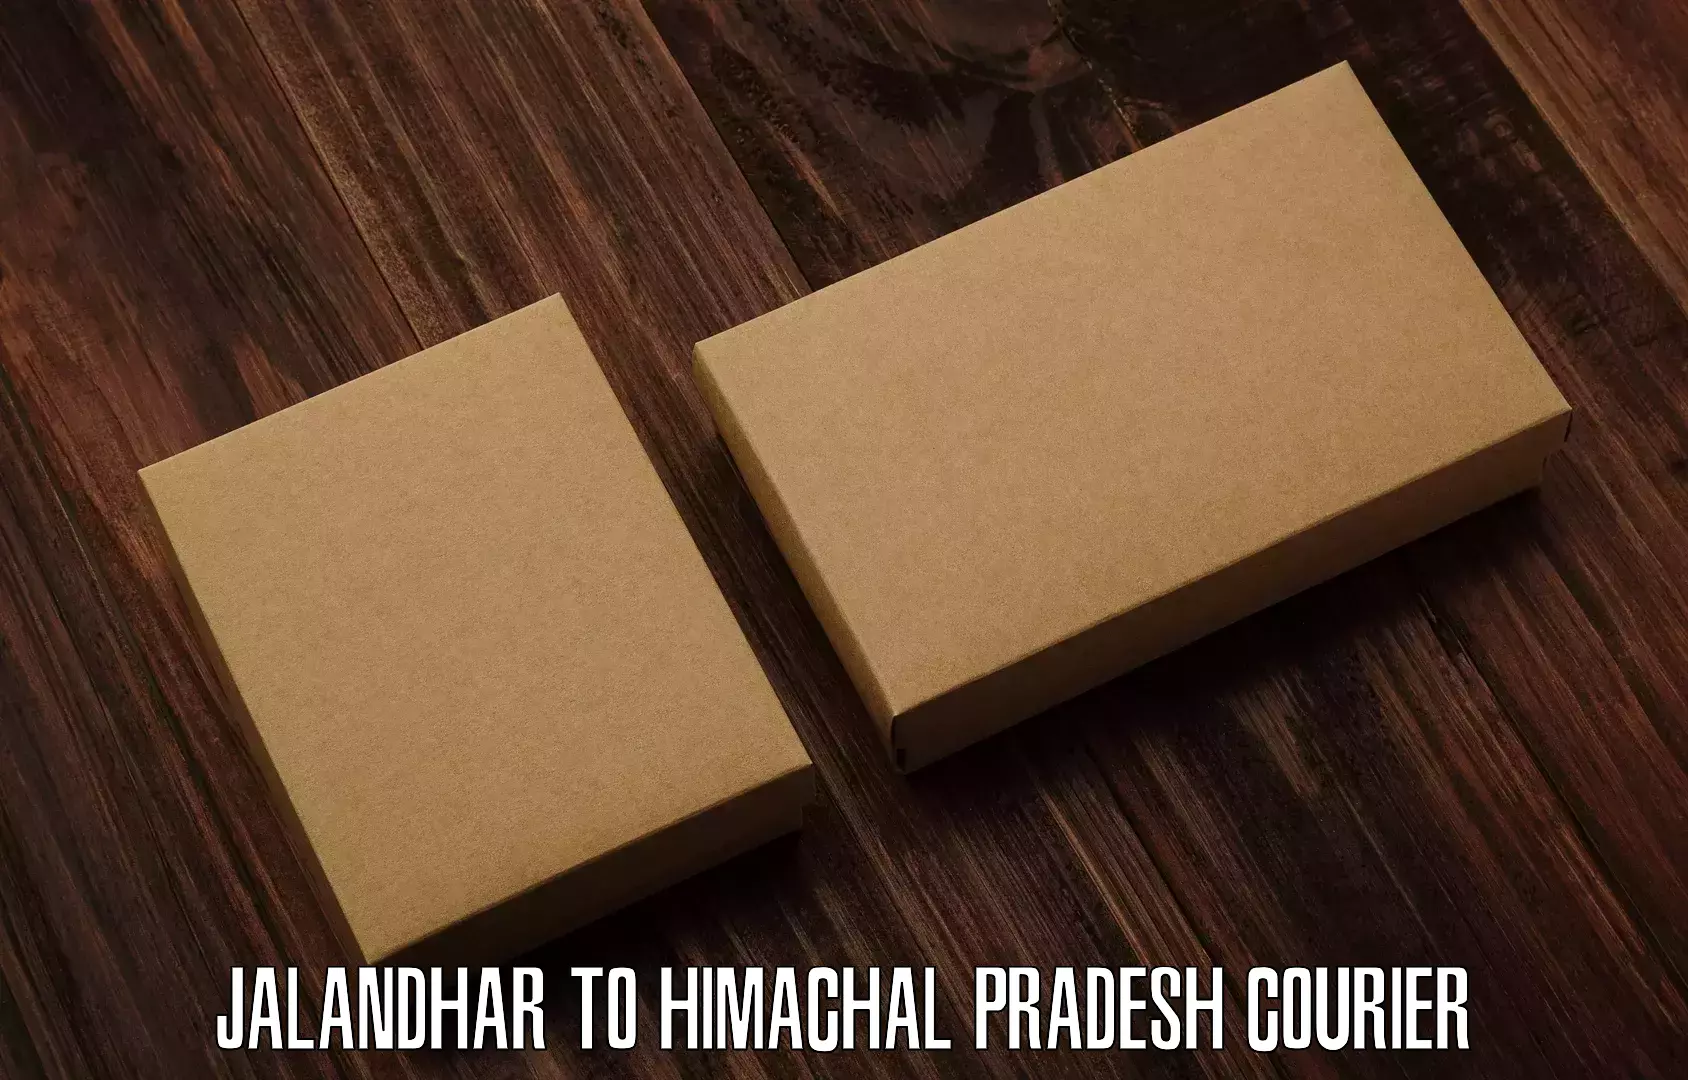 Lightweight parcel options Jalandhar to Nagwain